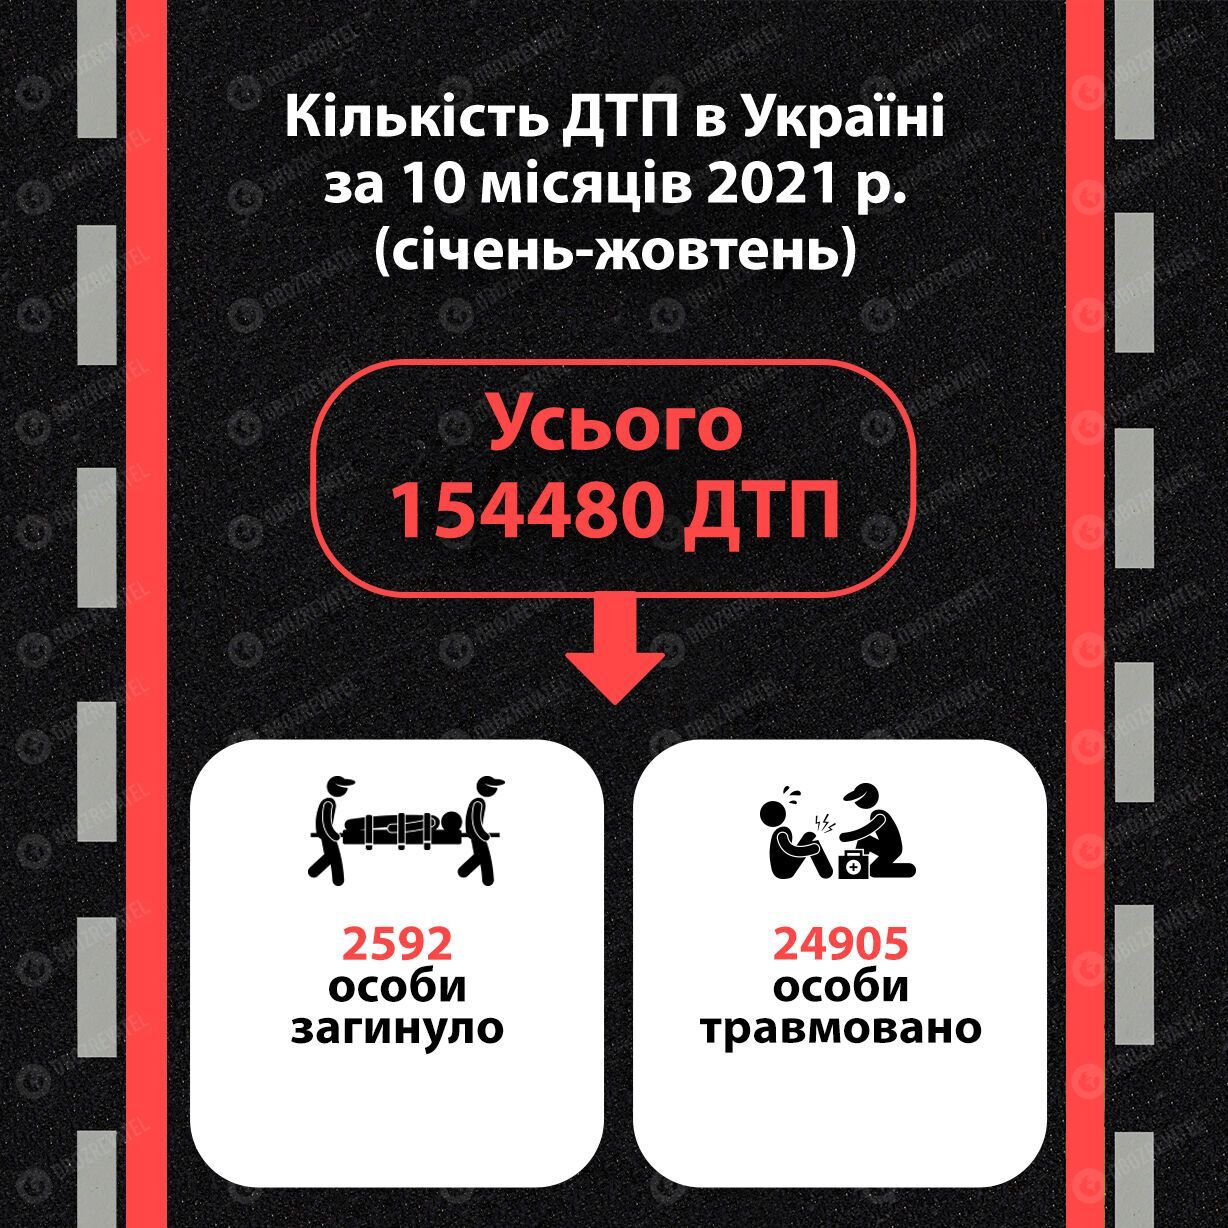 Статистика ДТП в Украине